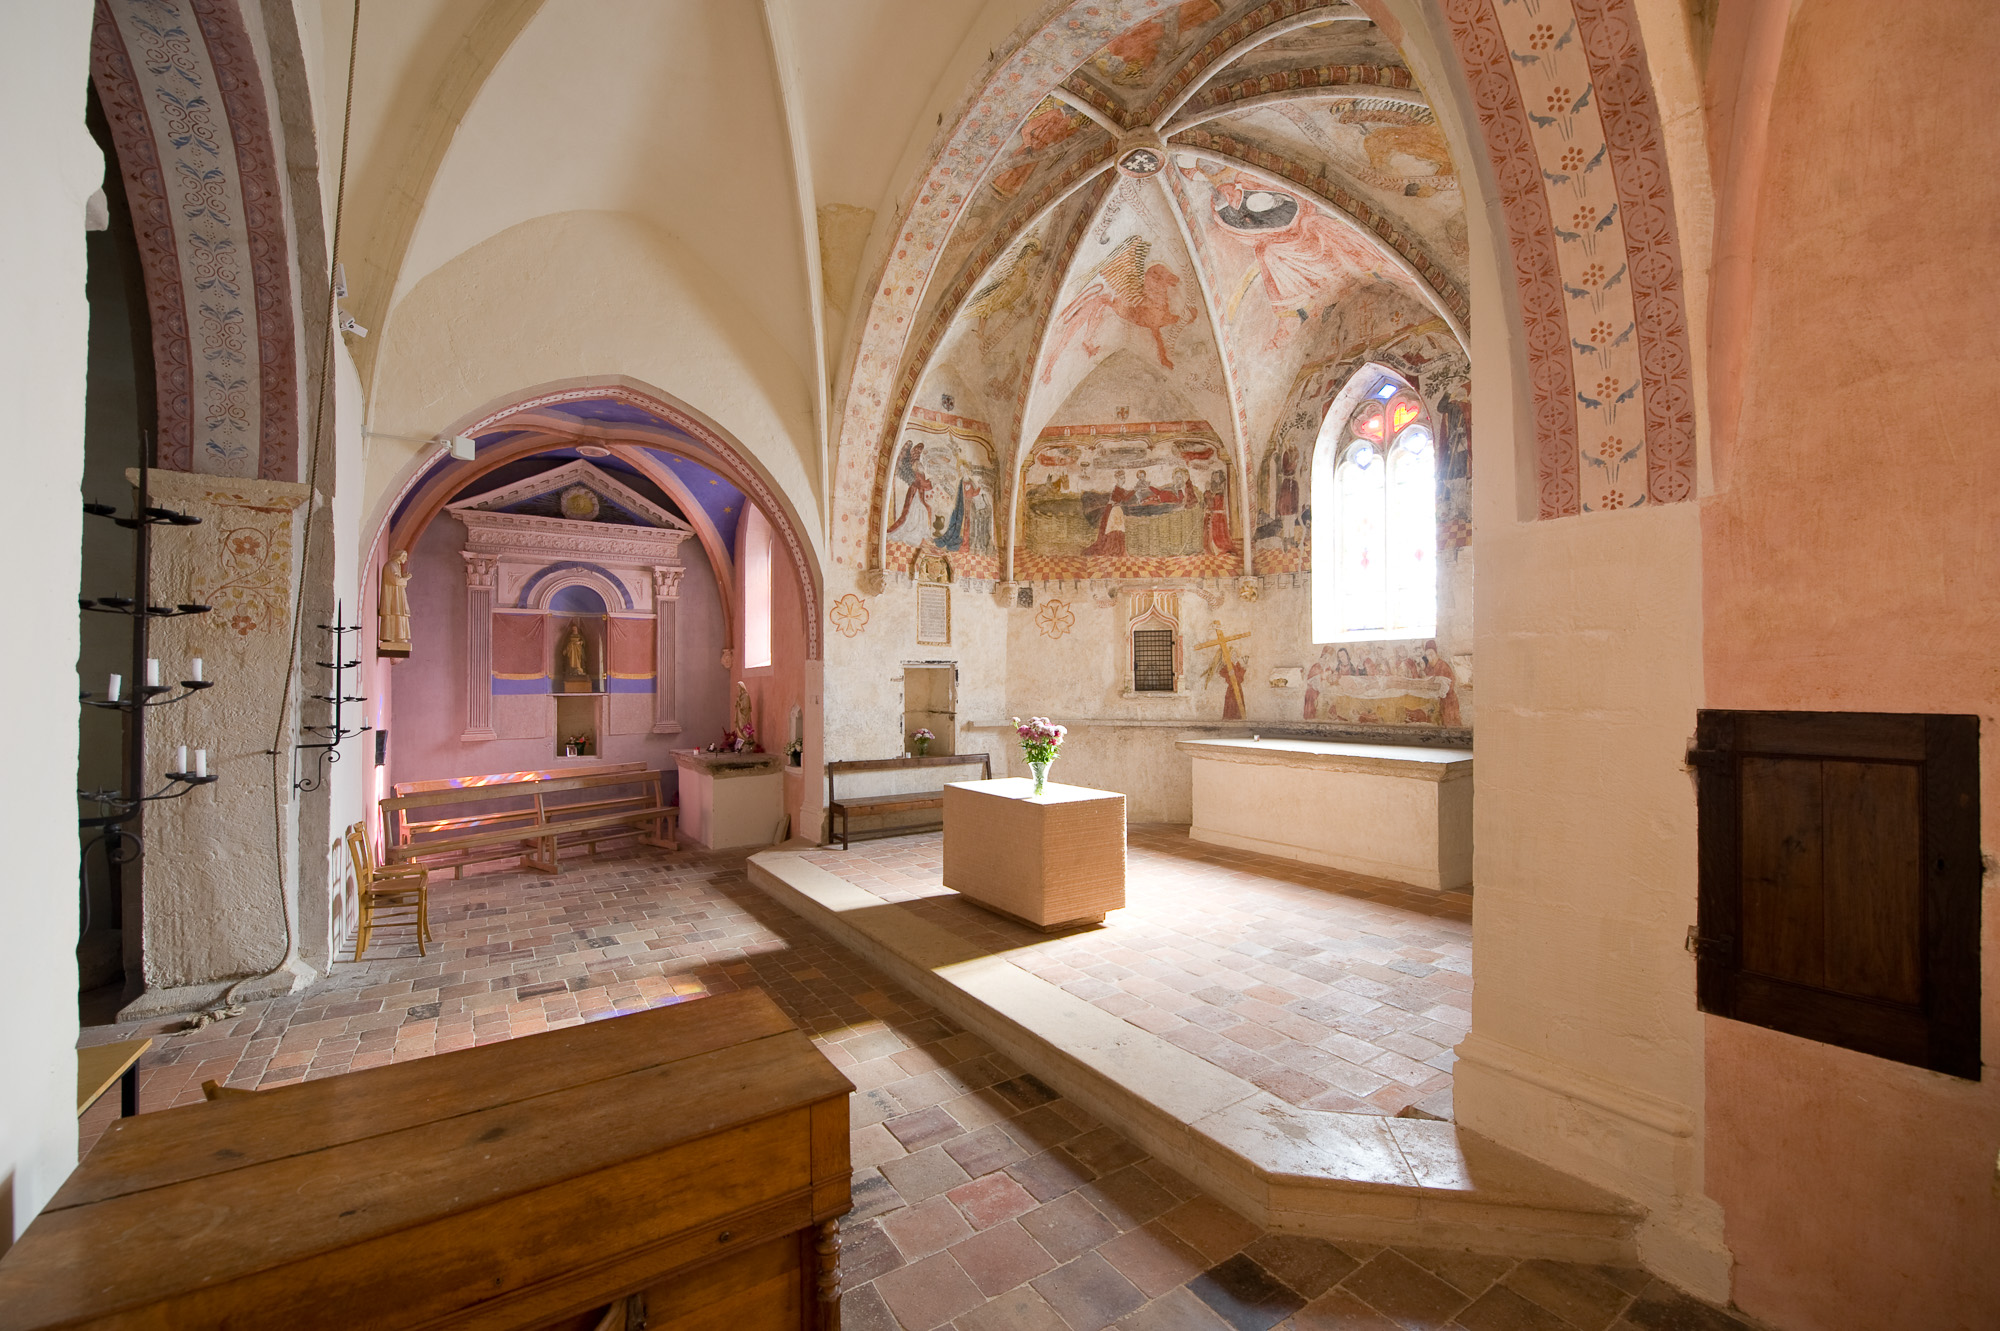 Chapelle du Chatelard. Fresques d'inspiration bysantine dans la chapelle Notre-Dame-de-Beaumont.